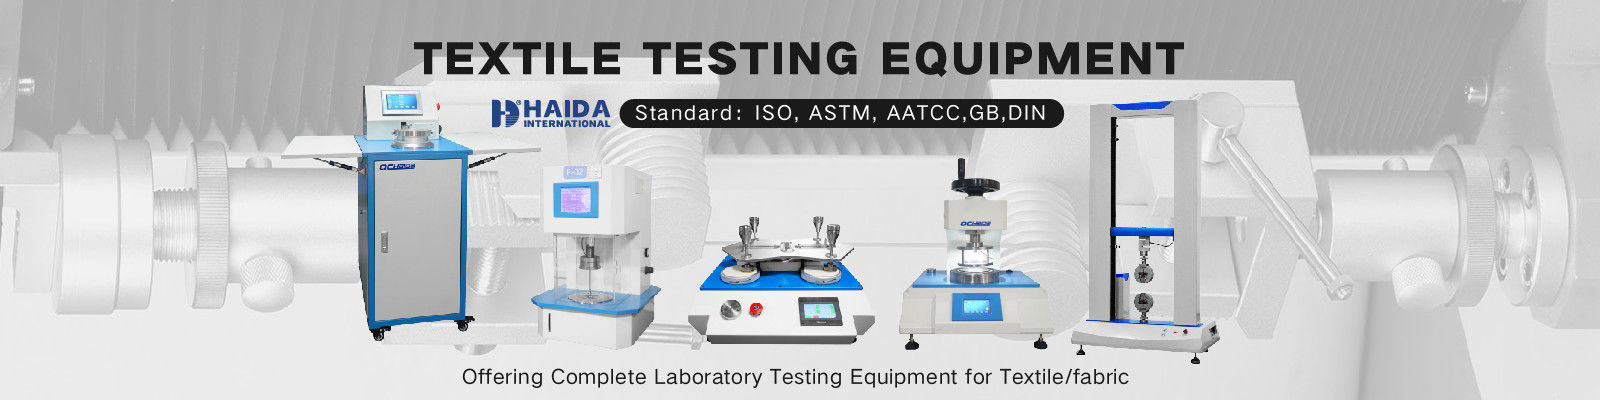 Textile Testing Equipment